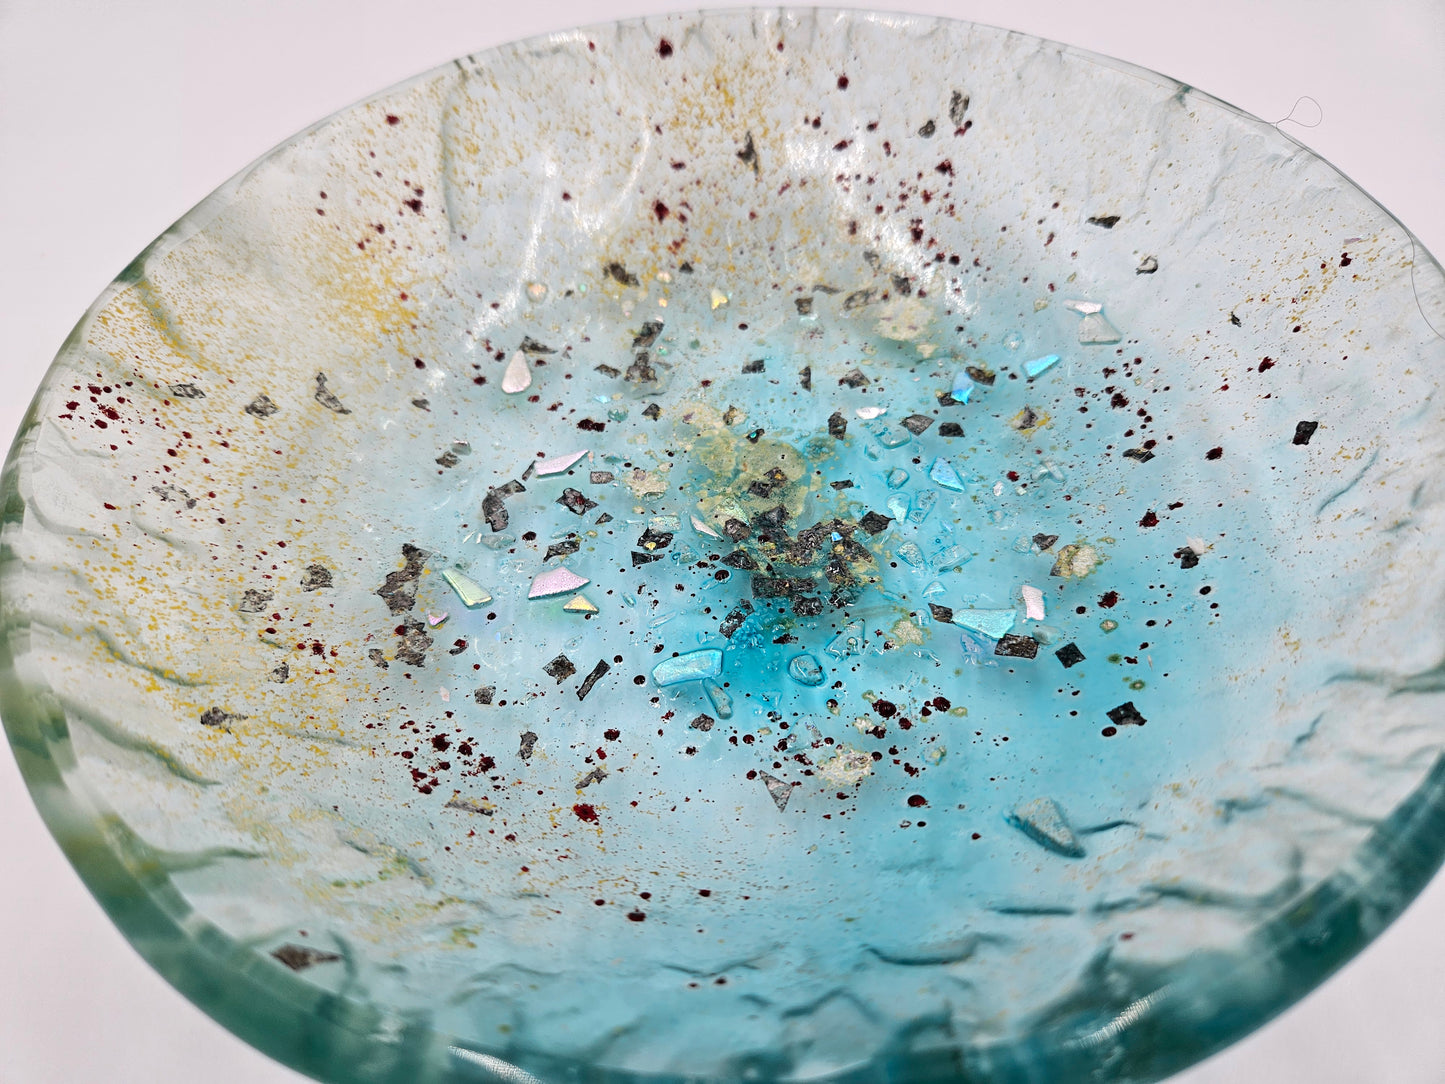 Art Glass Bowl Candy Serving Centerpiece Blown Hand Made